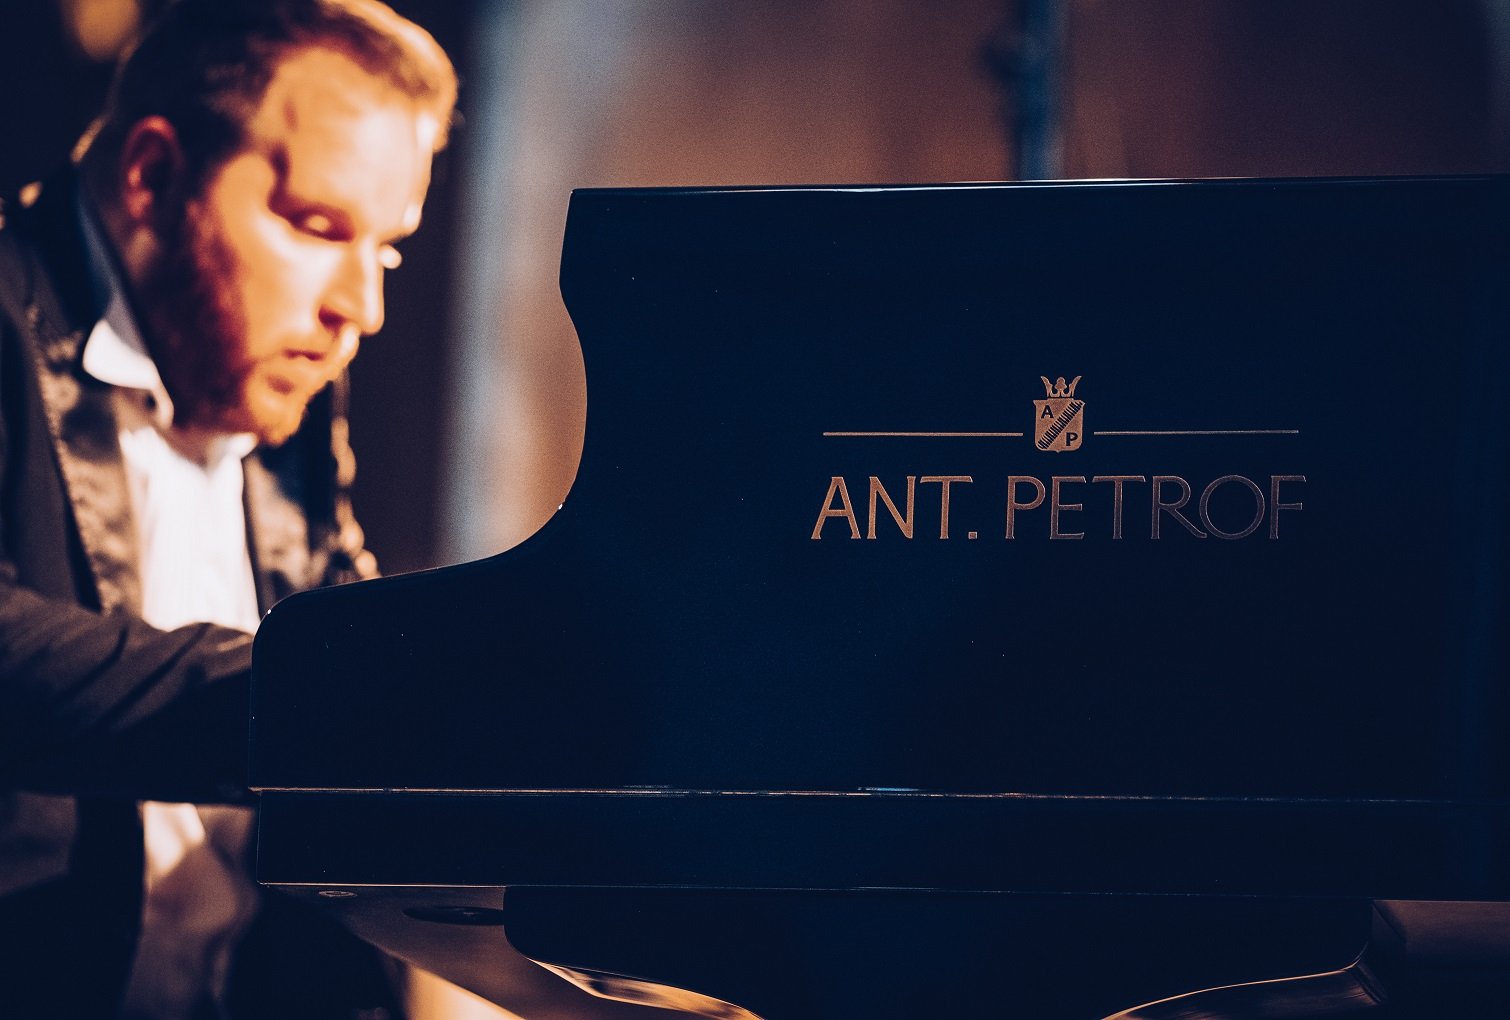 Značka ANT. PETROF patří podle magazínu Piano Buyer mezi „ikonické“